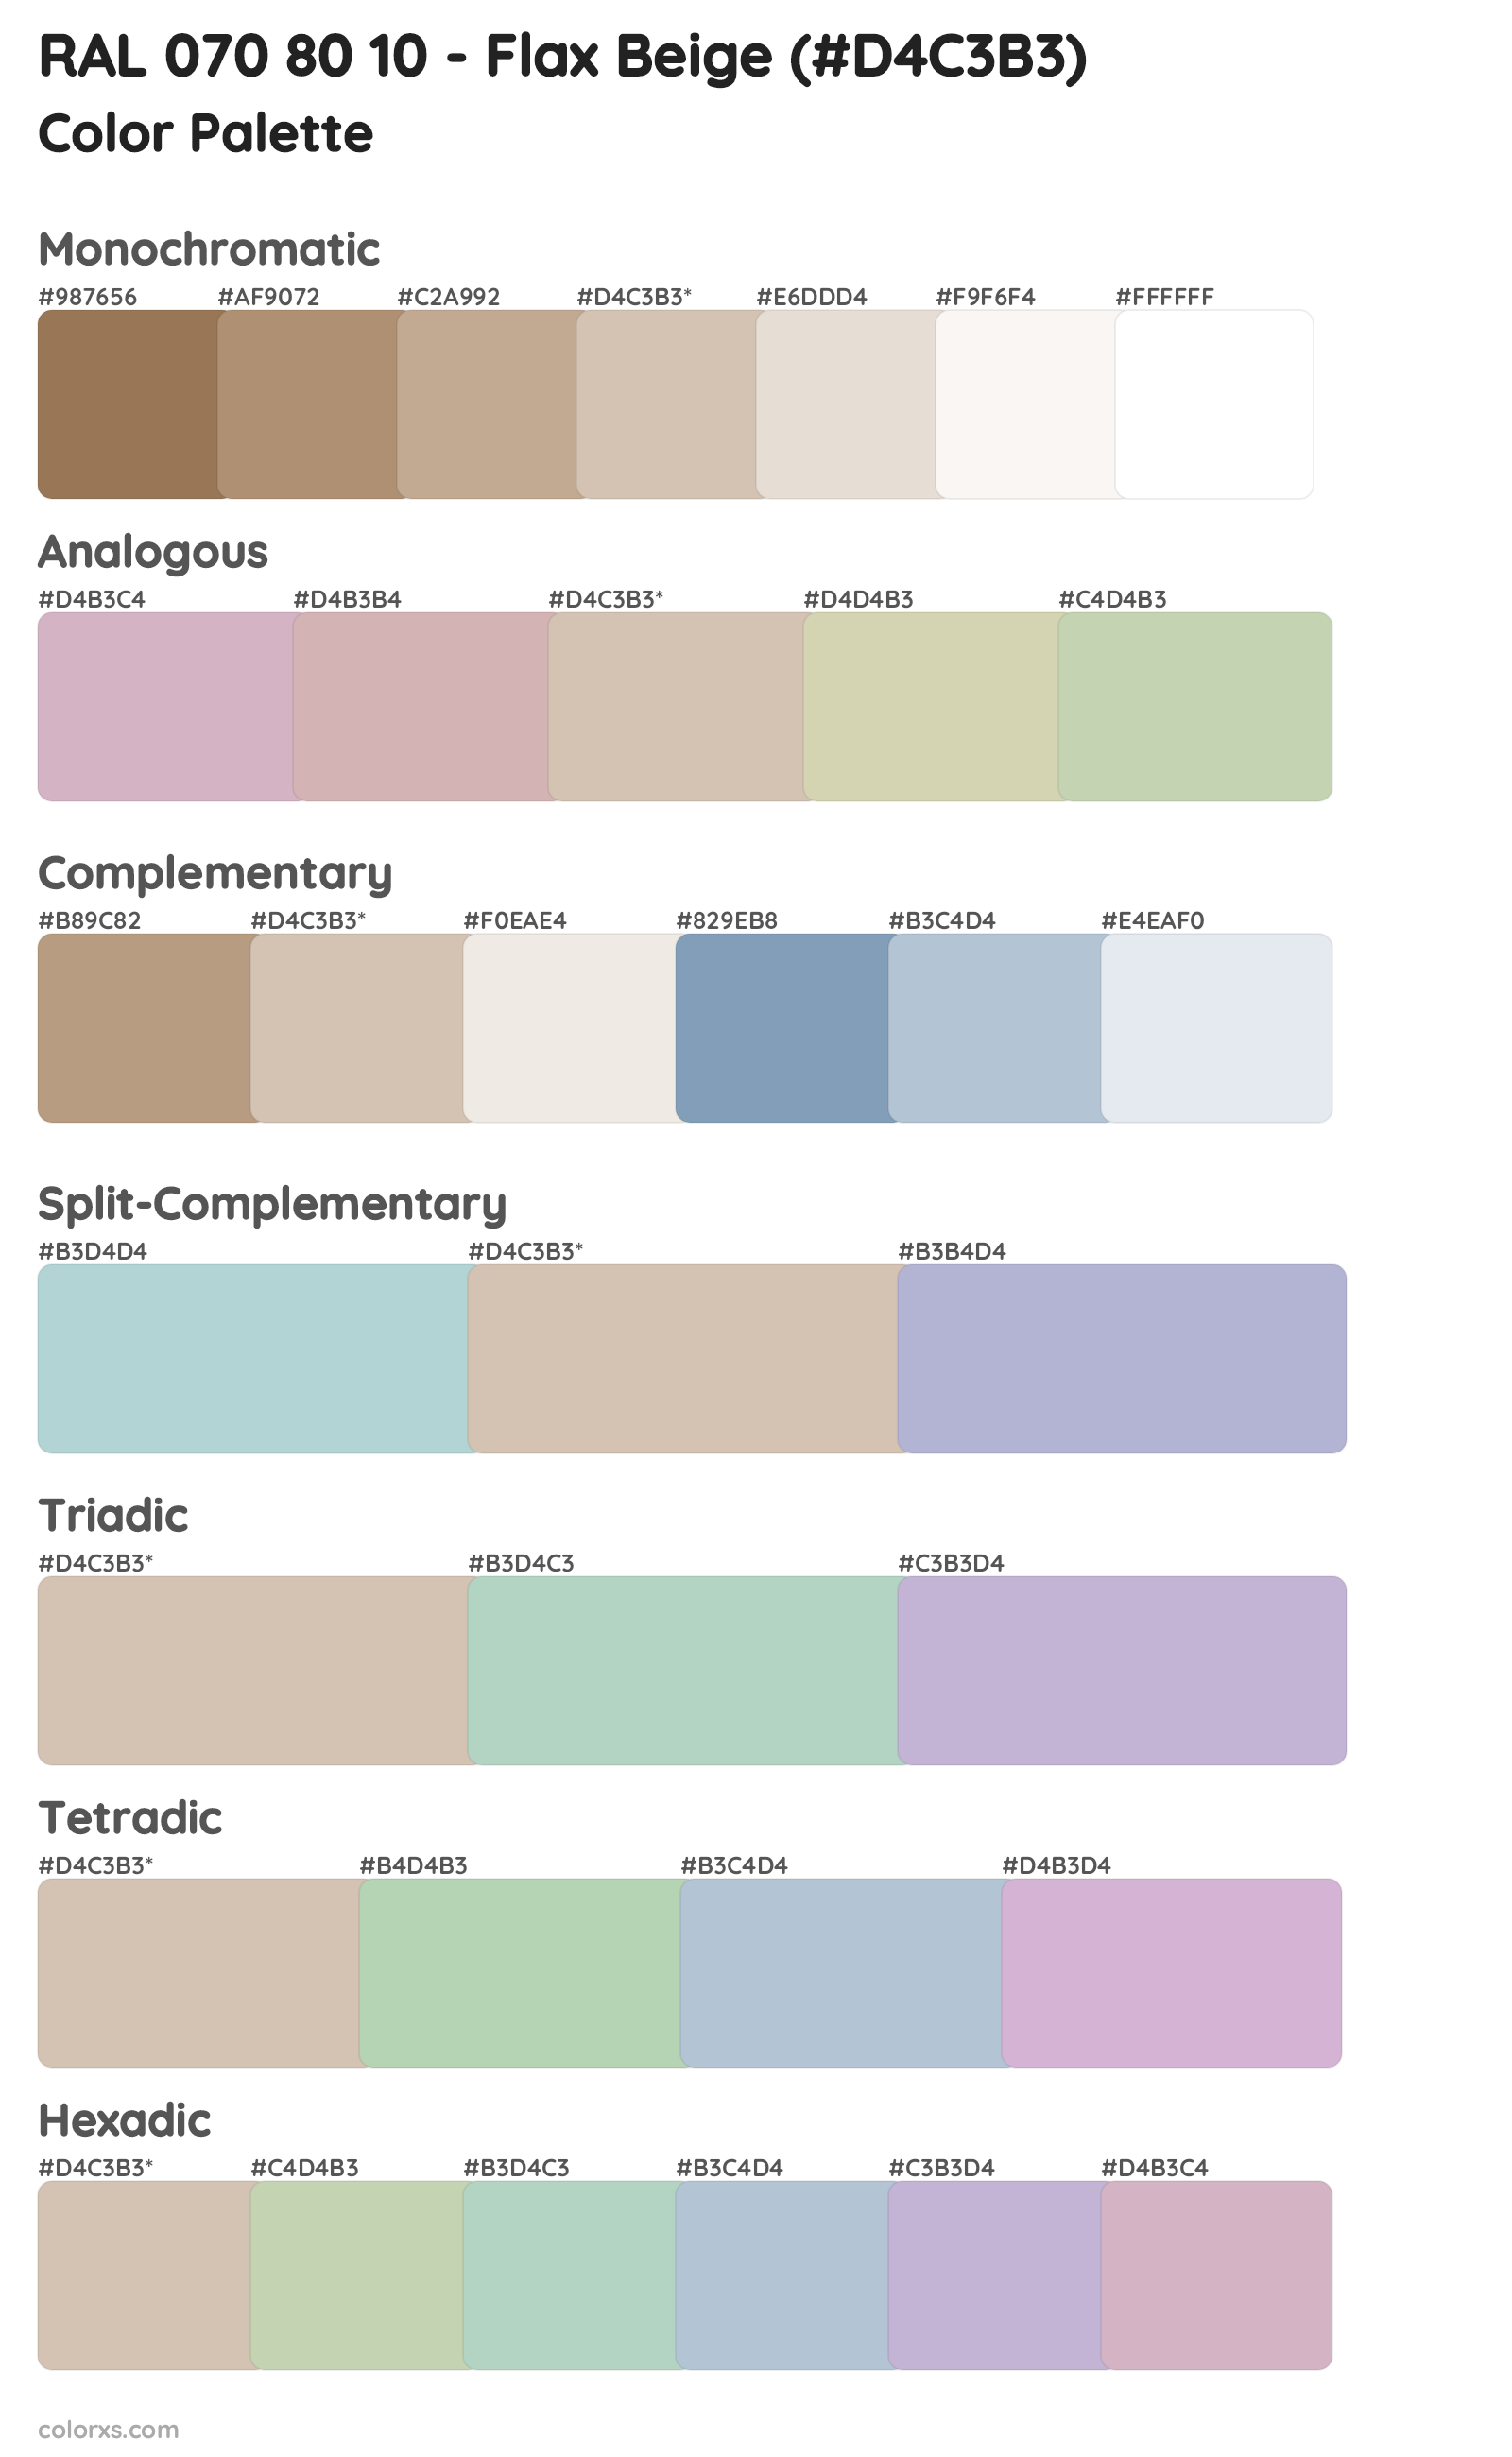 RAL 070 80 10 - Flax Beige Color Scheme Palettes